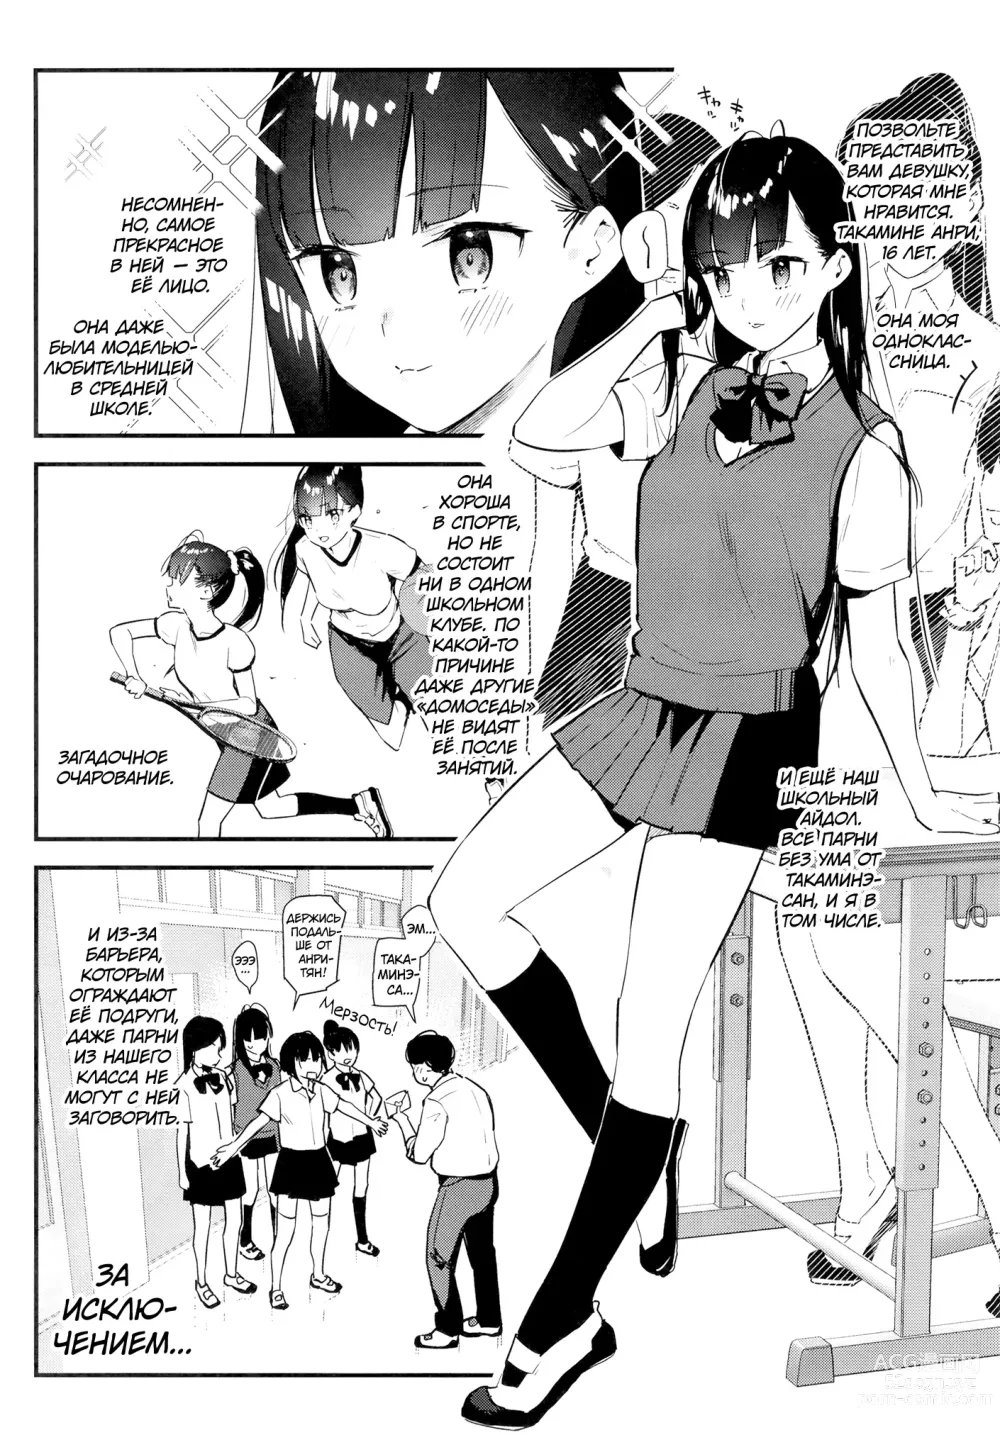 Page 4 of doujinshi Девушка, которая мне нравится, оказывает особые услуги постоянным клиентам